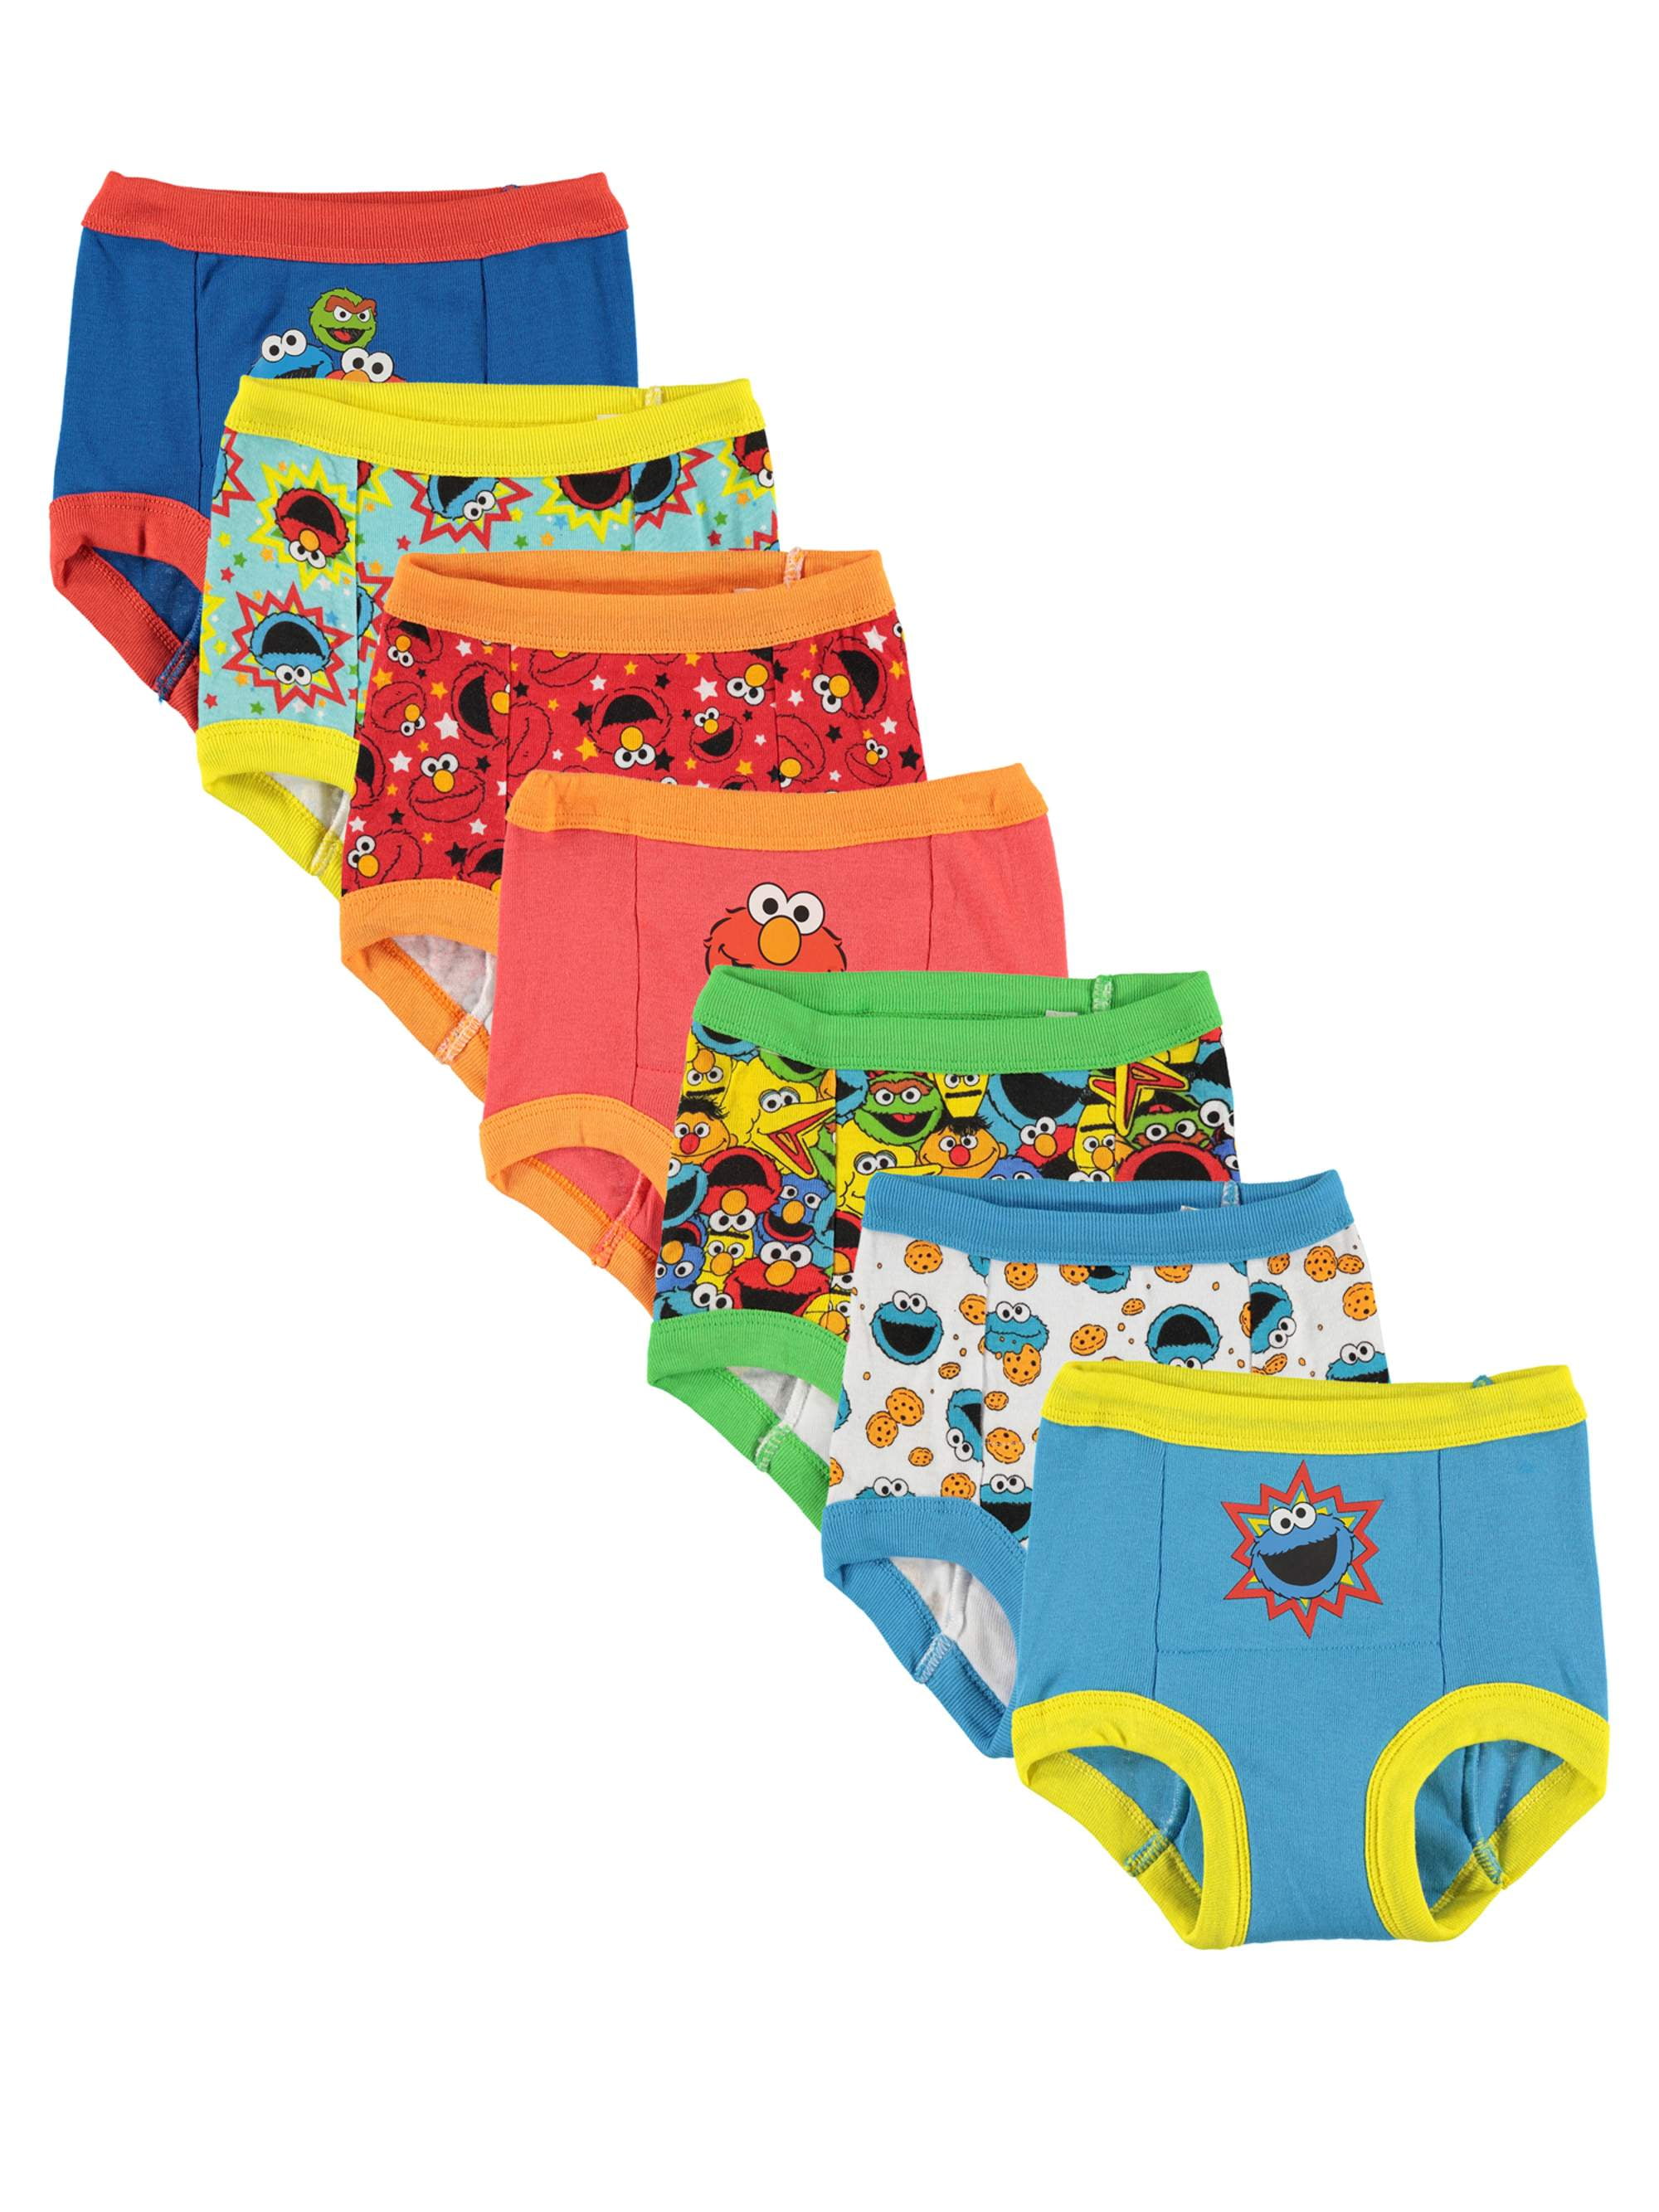 Sesame Street Toddler Boys Training Pants, 7-Pack